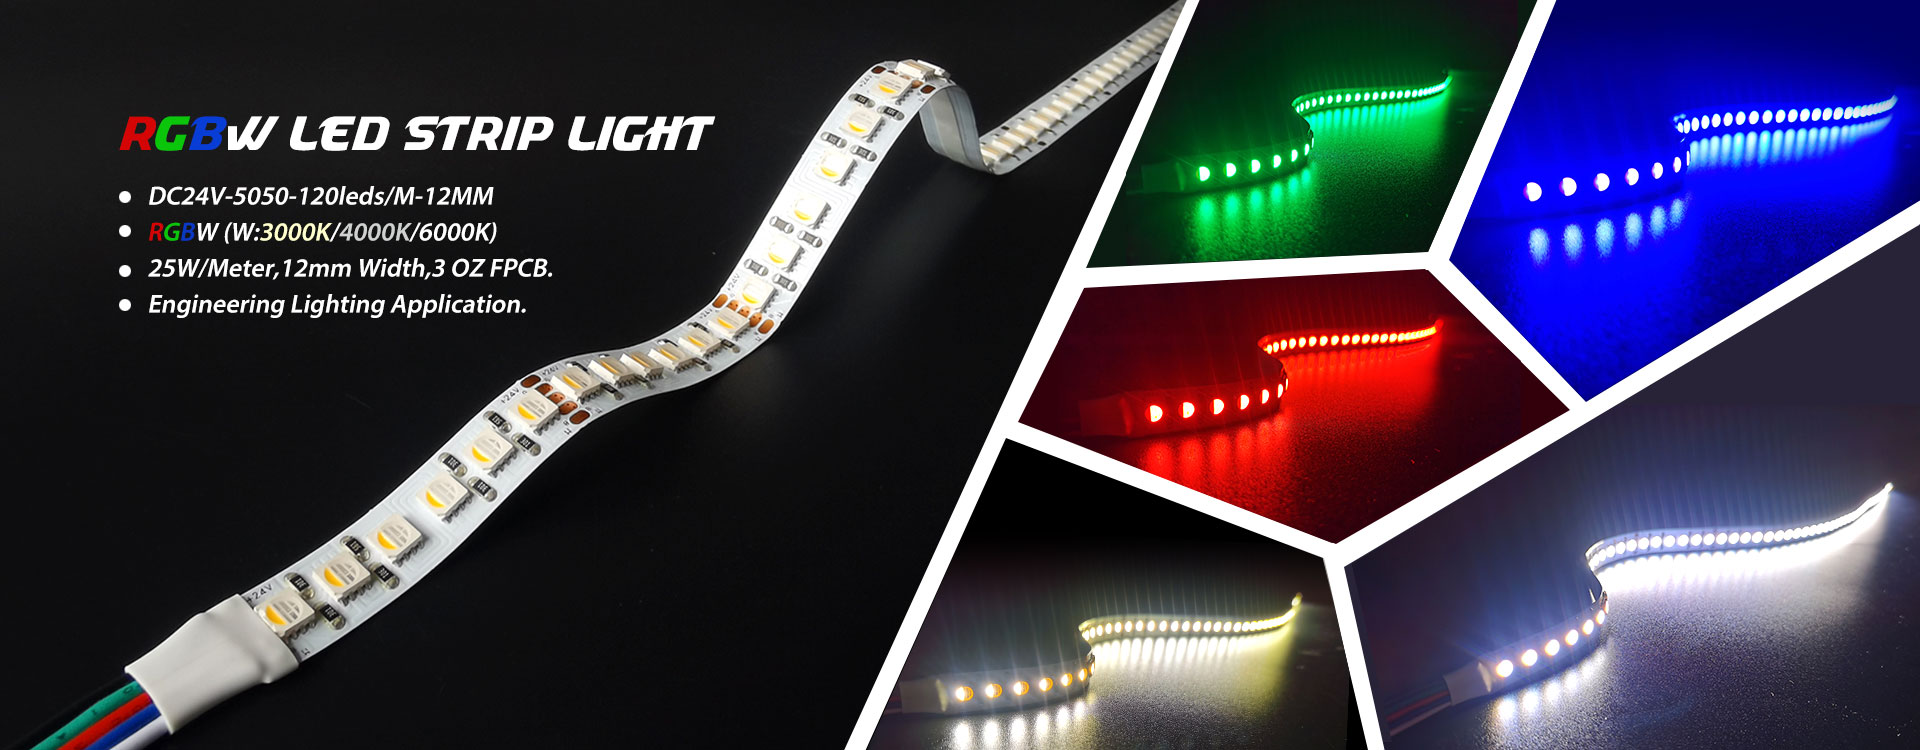 RGBW LED ストリップ ライト